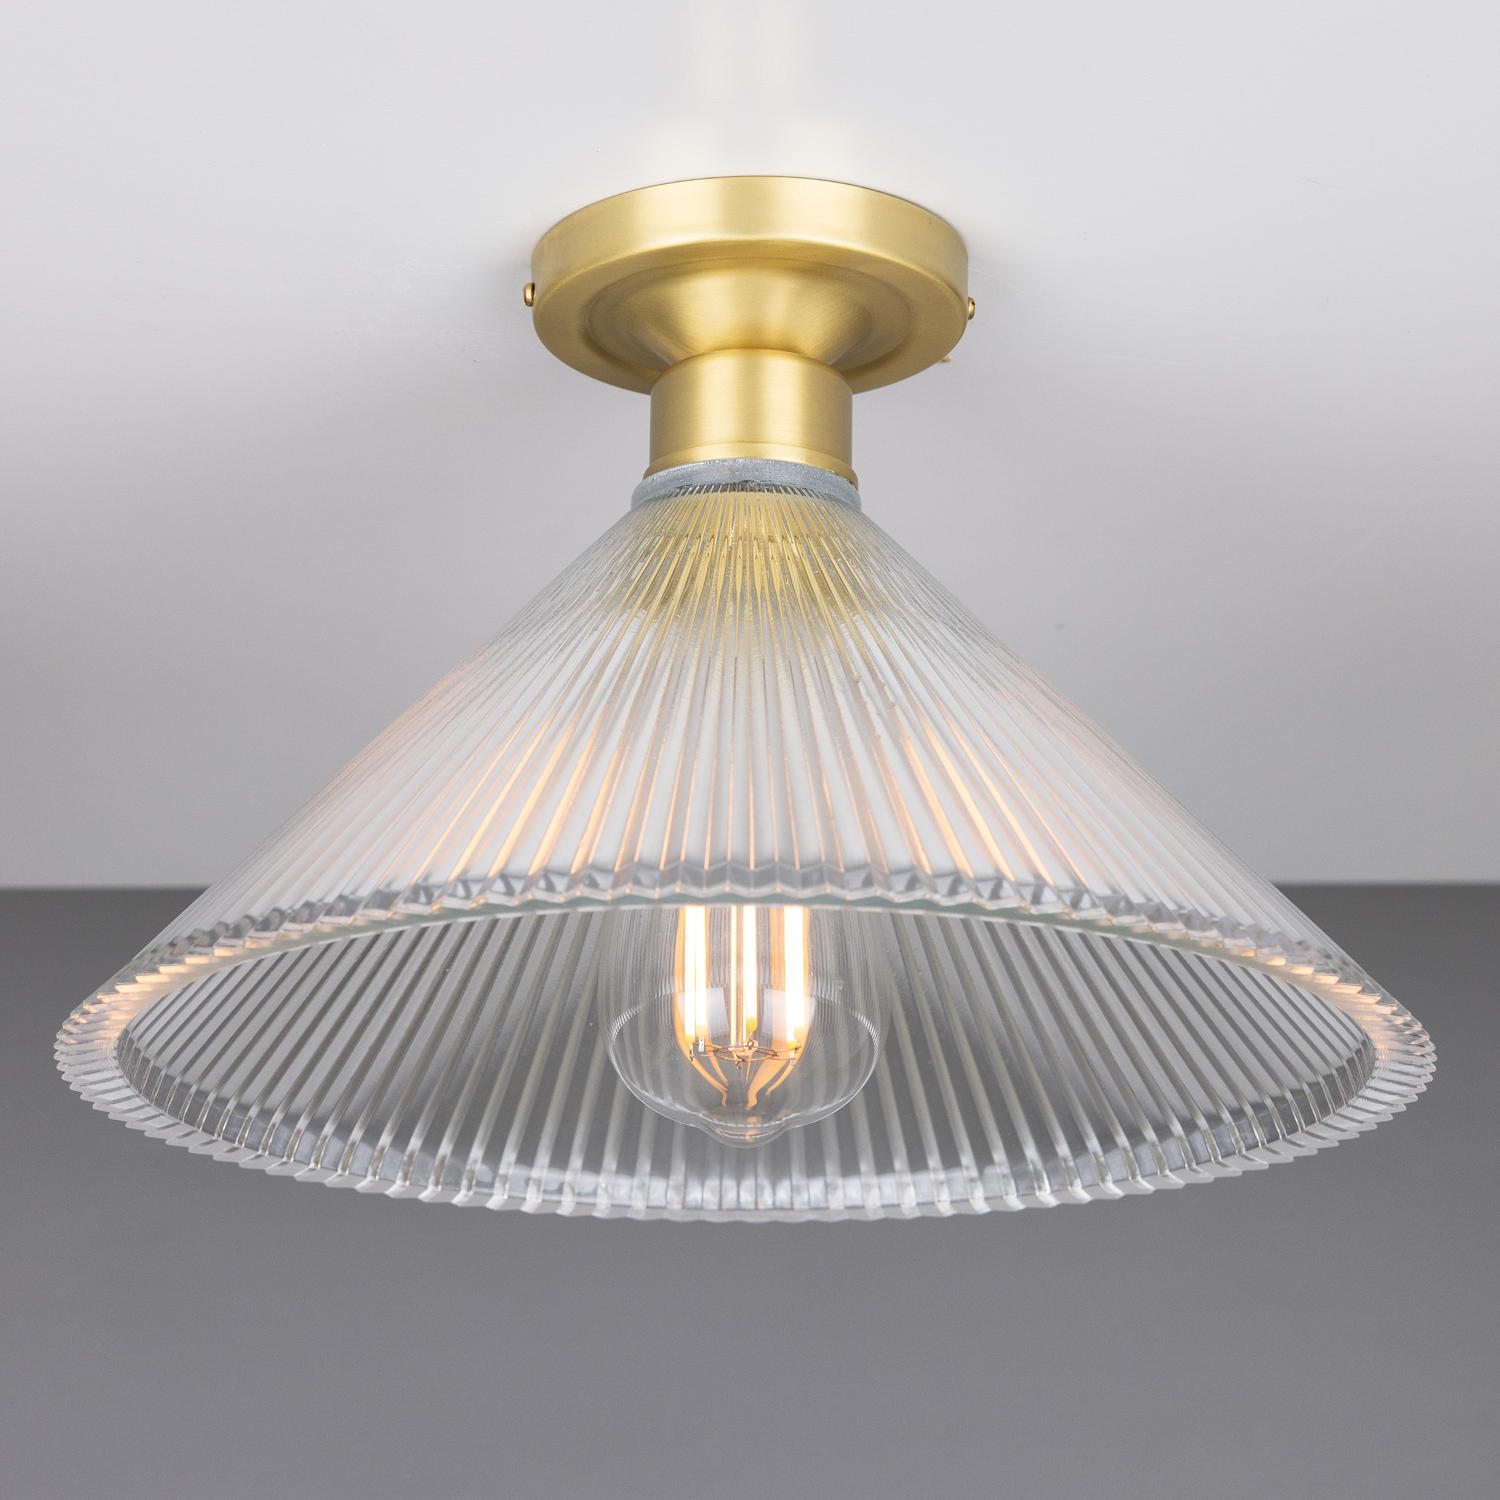 Deckenlampe mit prismatischem Kegel-Glasschirm Ø 30 cm: Messing satiniert